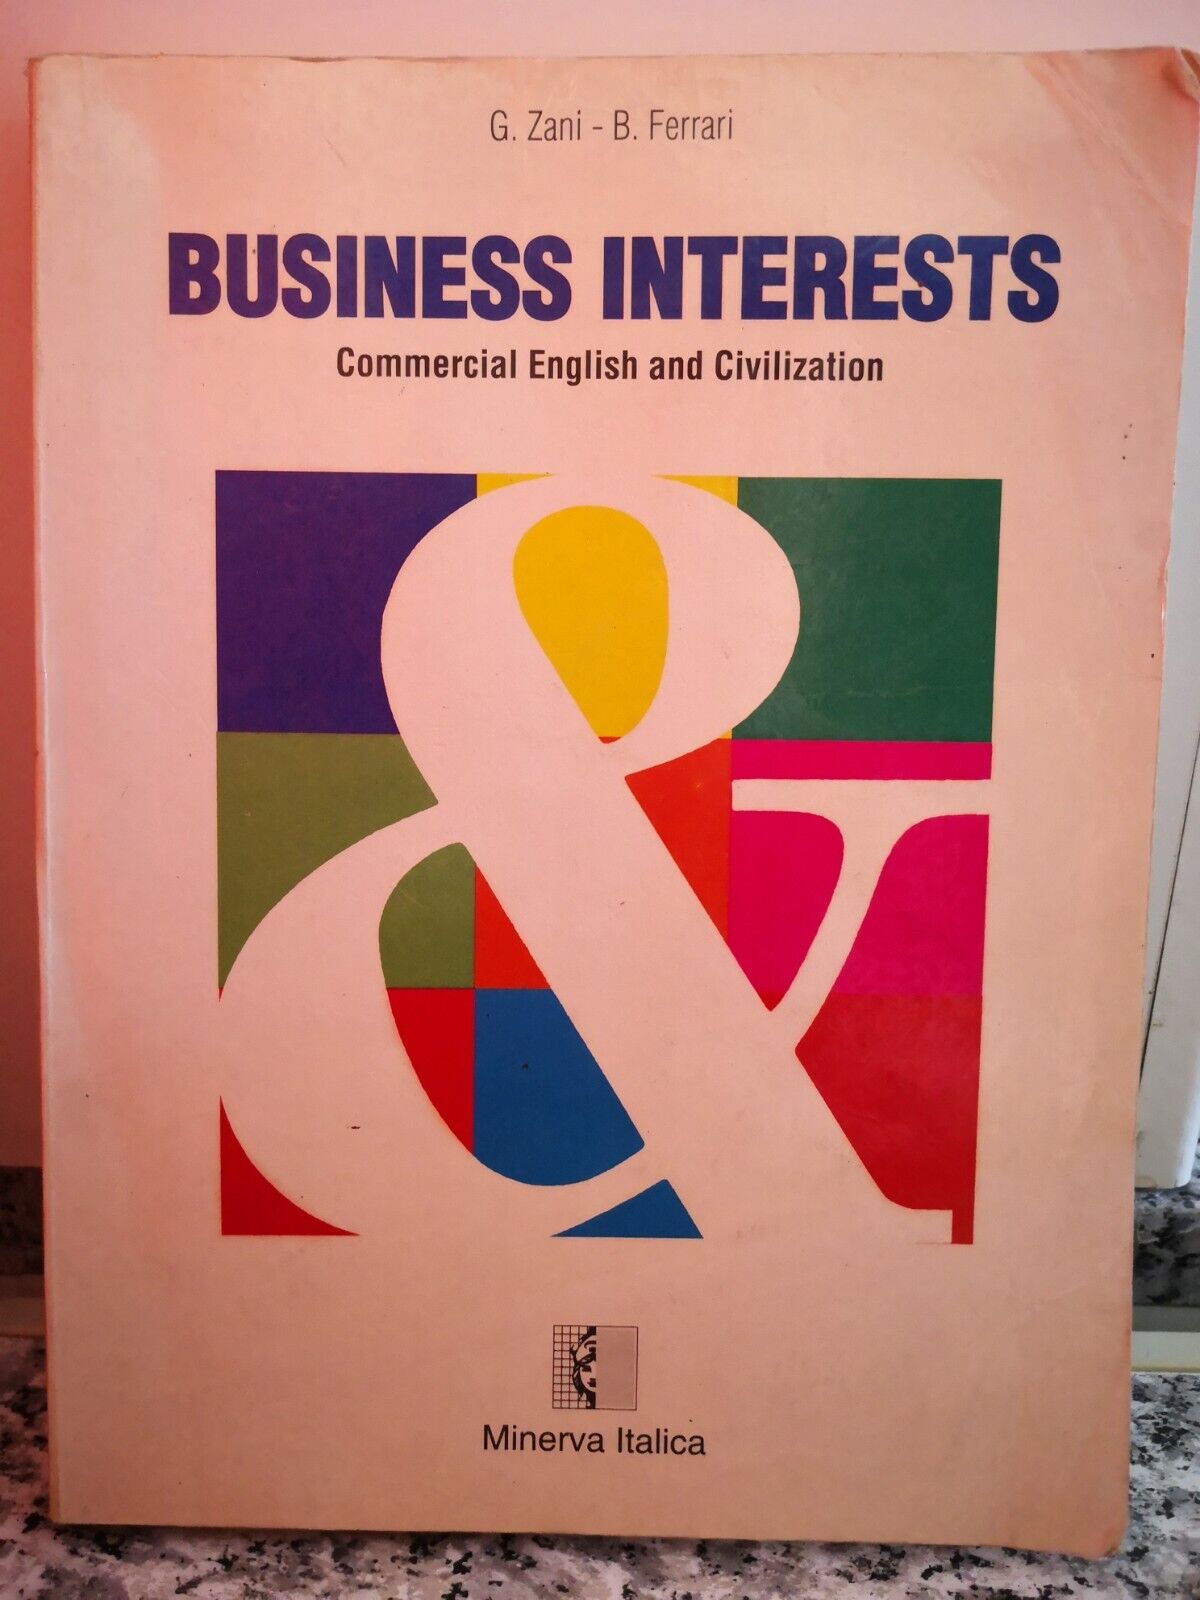  business interests commercial english civilization  di Zani E Ferrari, 1996,-F